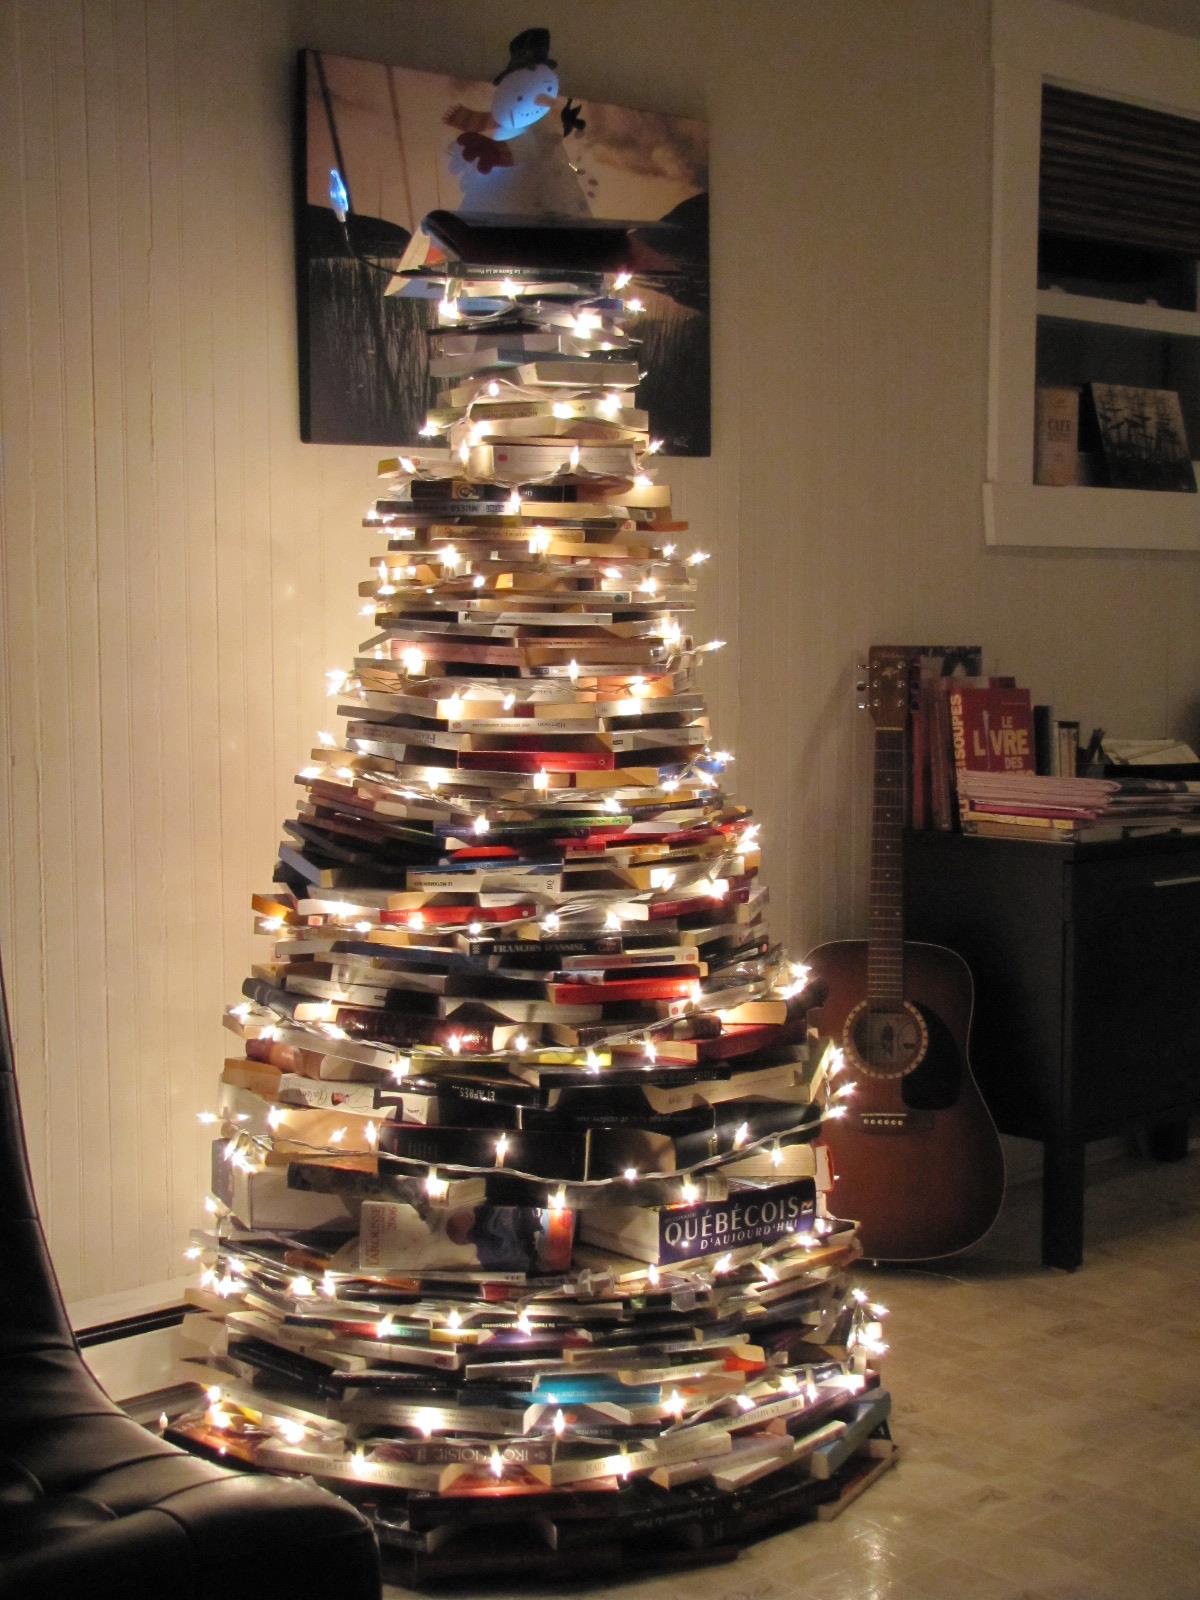 A bookworm's Christmas tree - meme